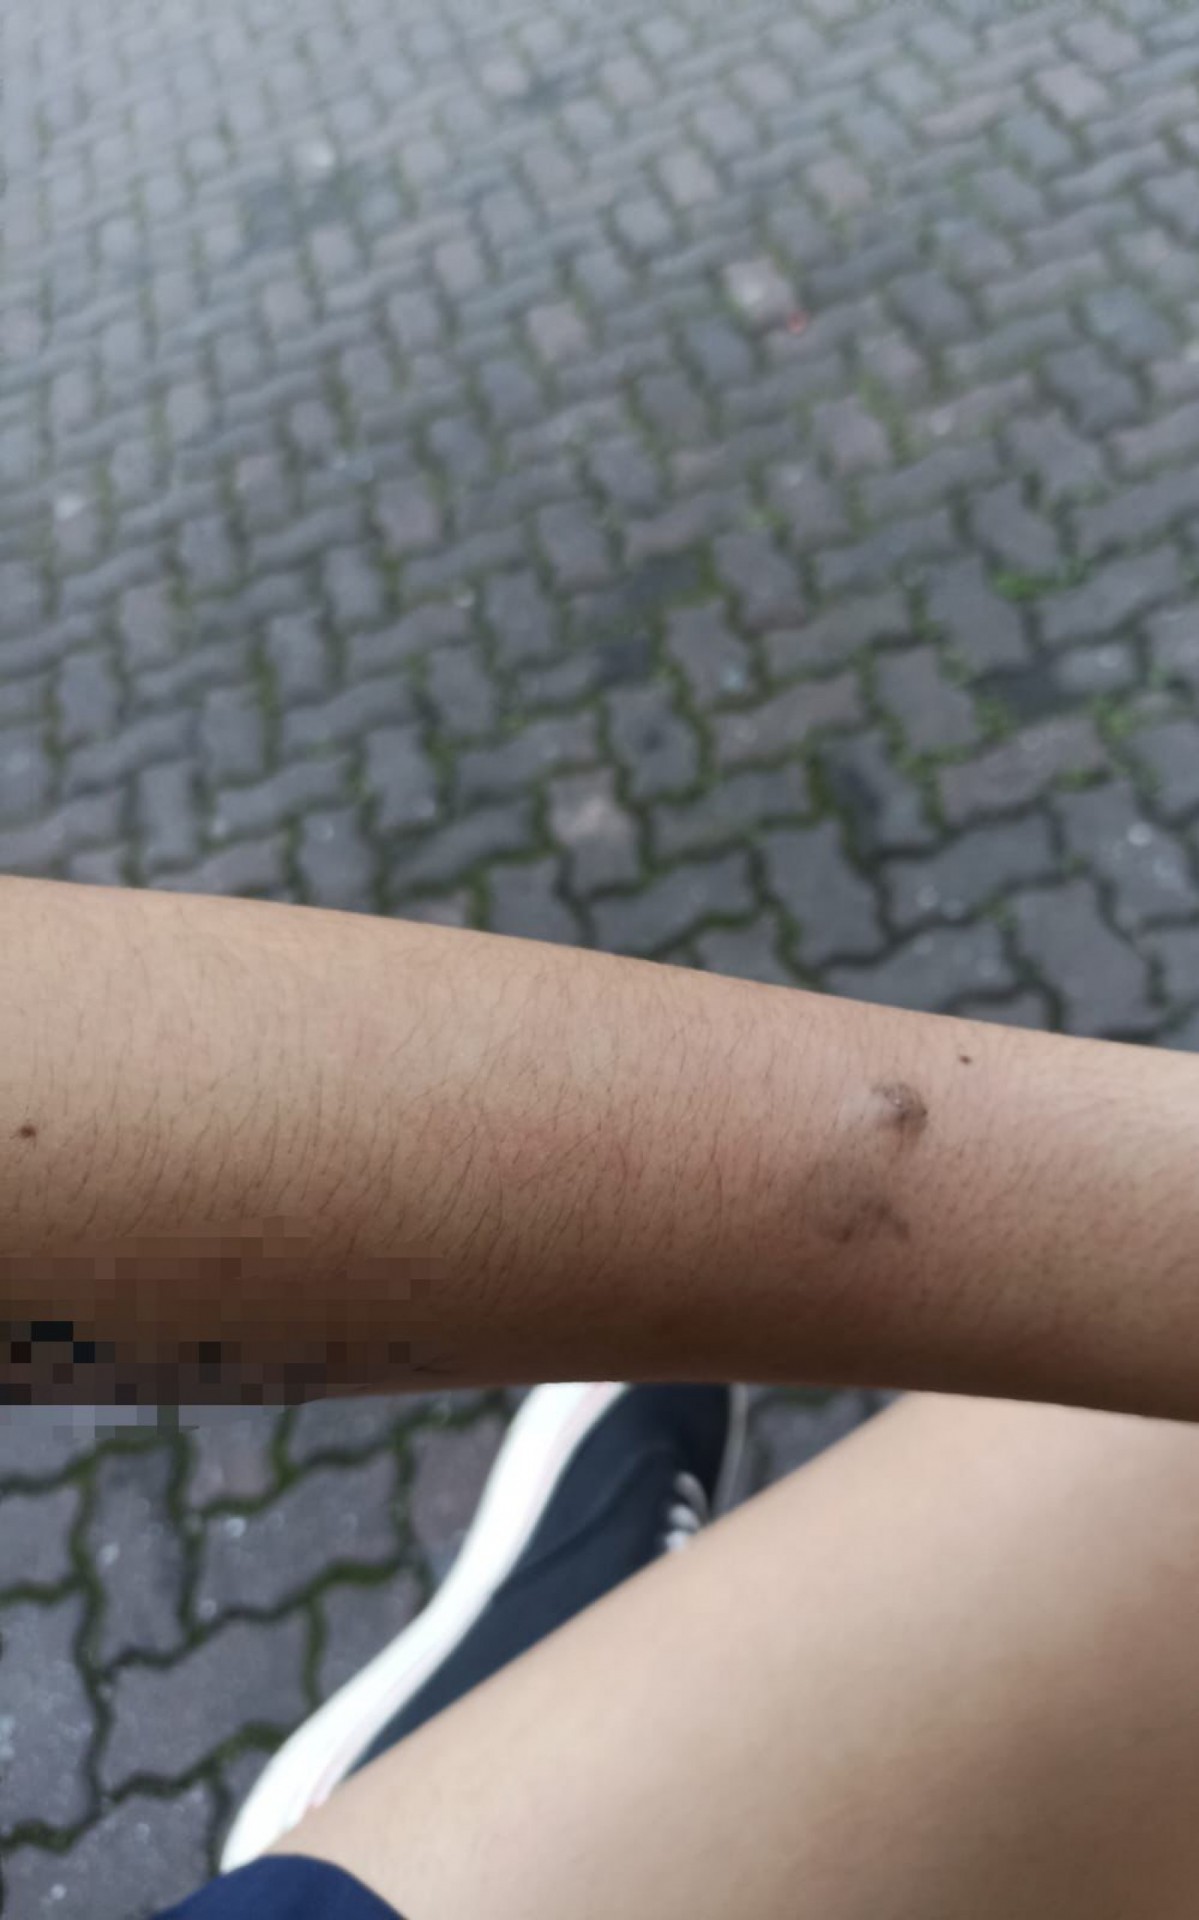 A jovem apresentou hematomas no braço - Foto: Arquivo Pessoal